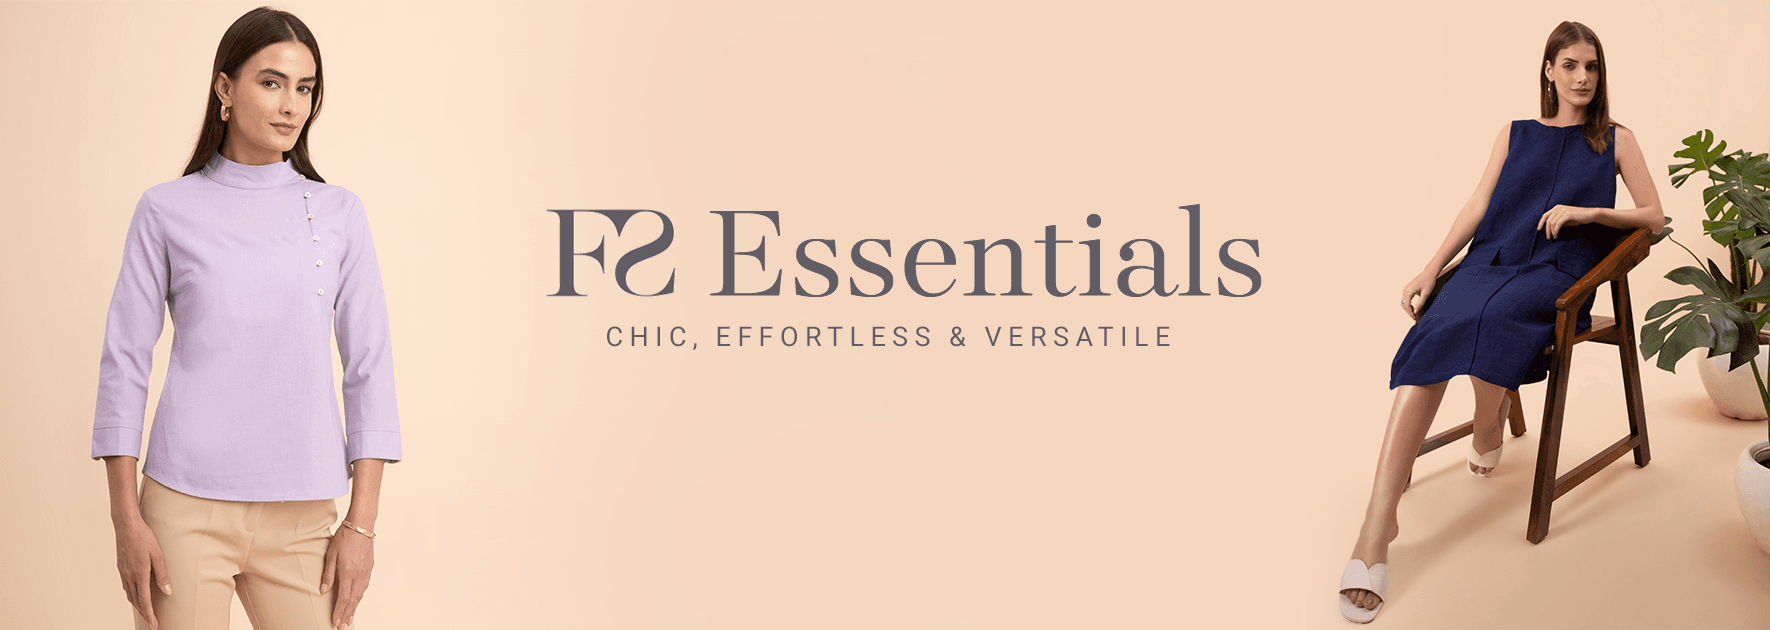 FS Essentials